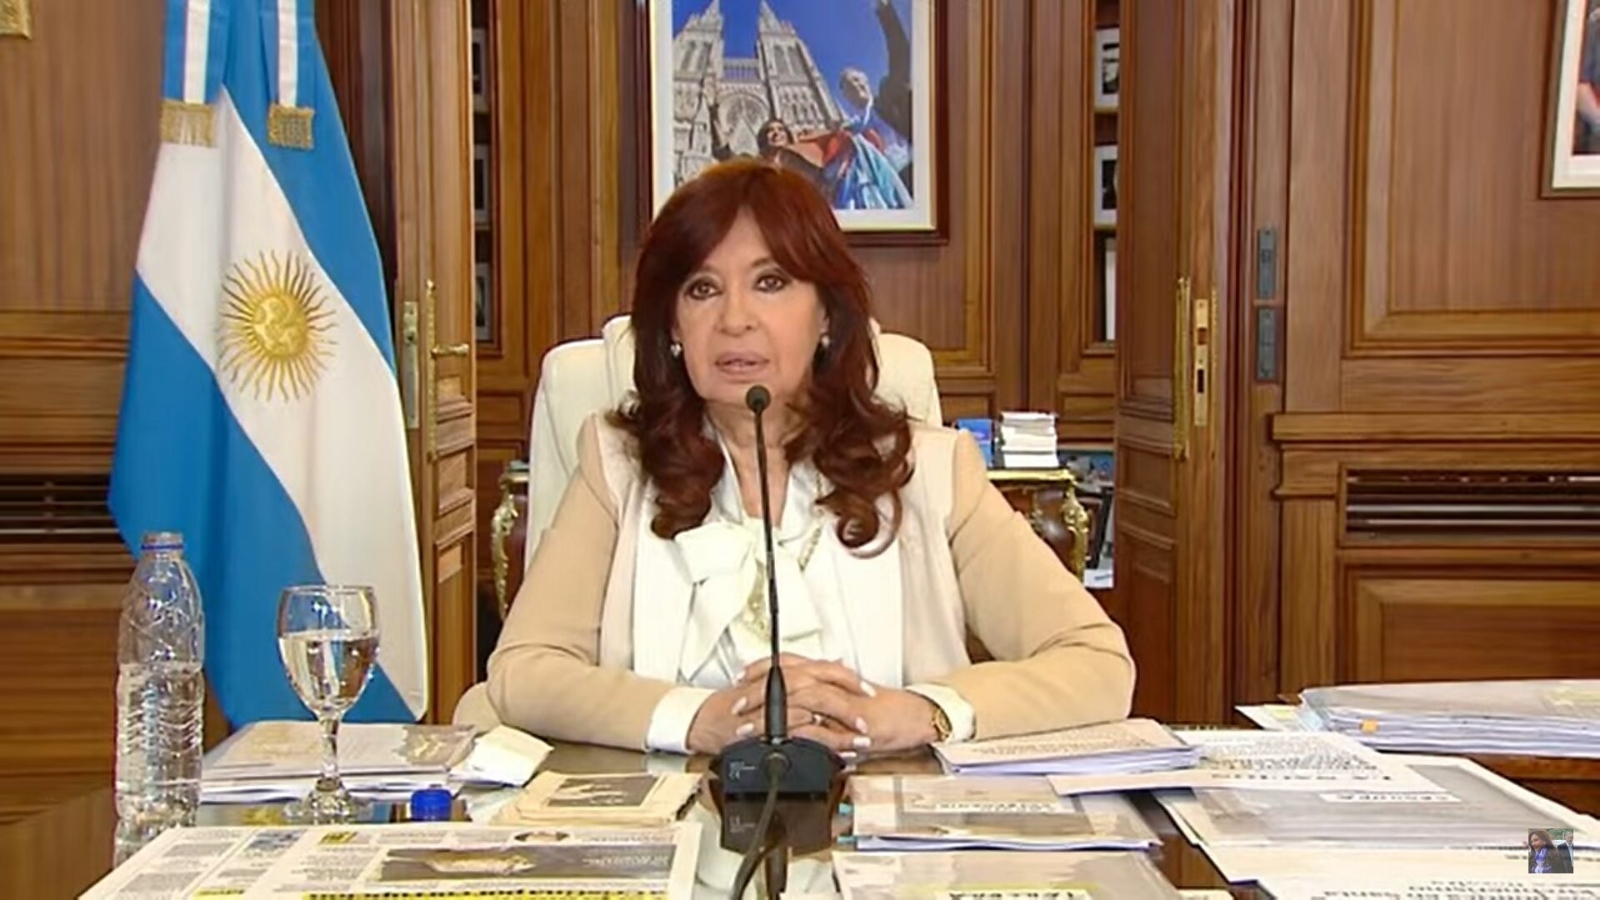 Un juez determinó la inocencia de Cristina Fernández en el caso conocido como la “ruta del dinero K”, que comenzó a investigarse en 2013